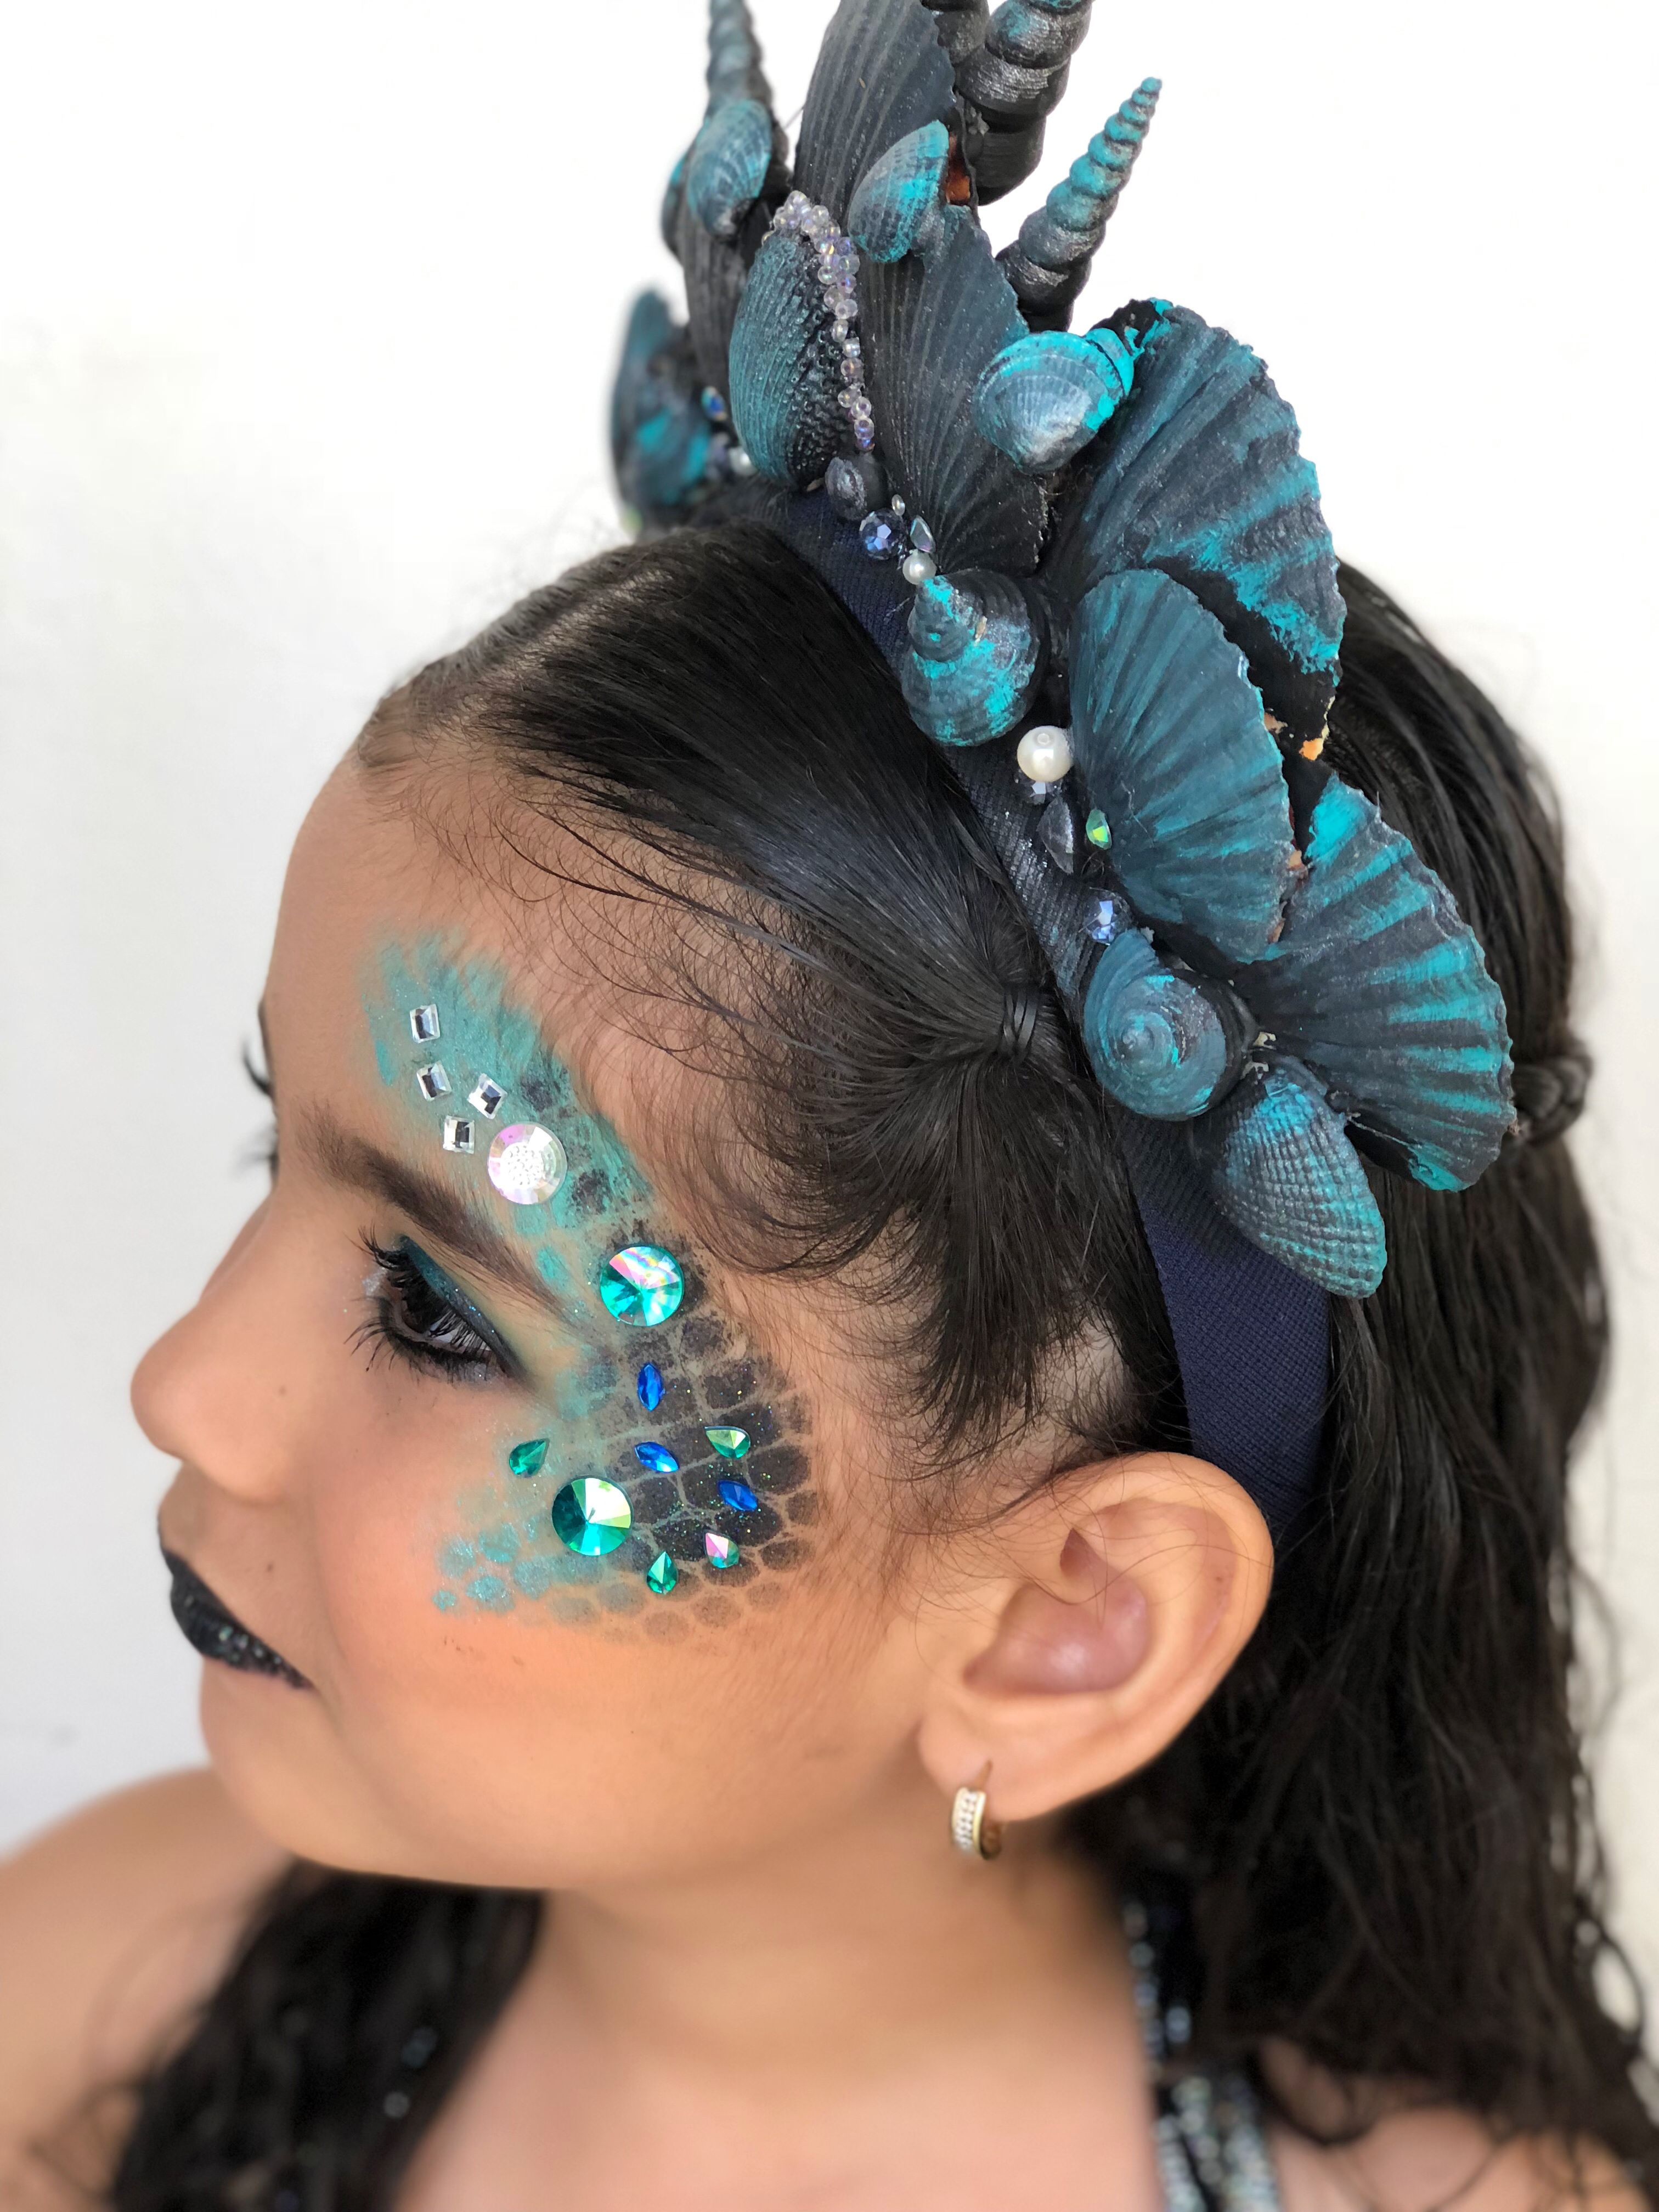 mermaid makeup ideas for little girl